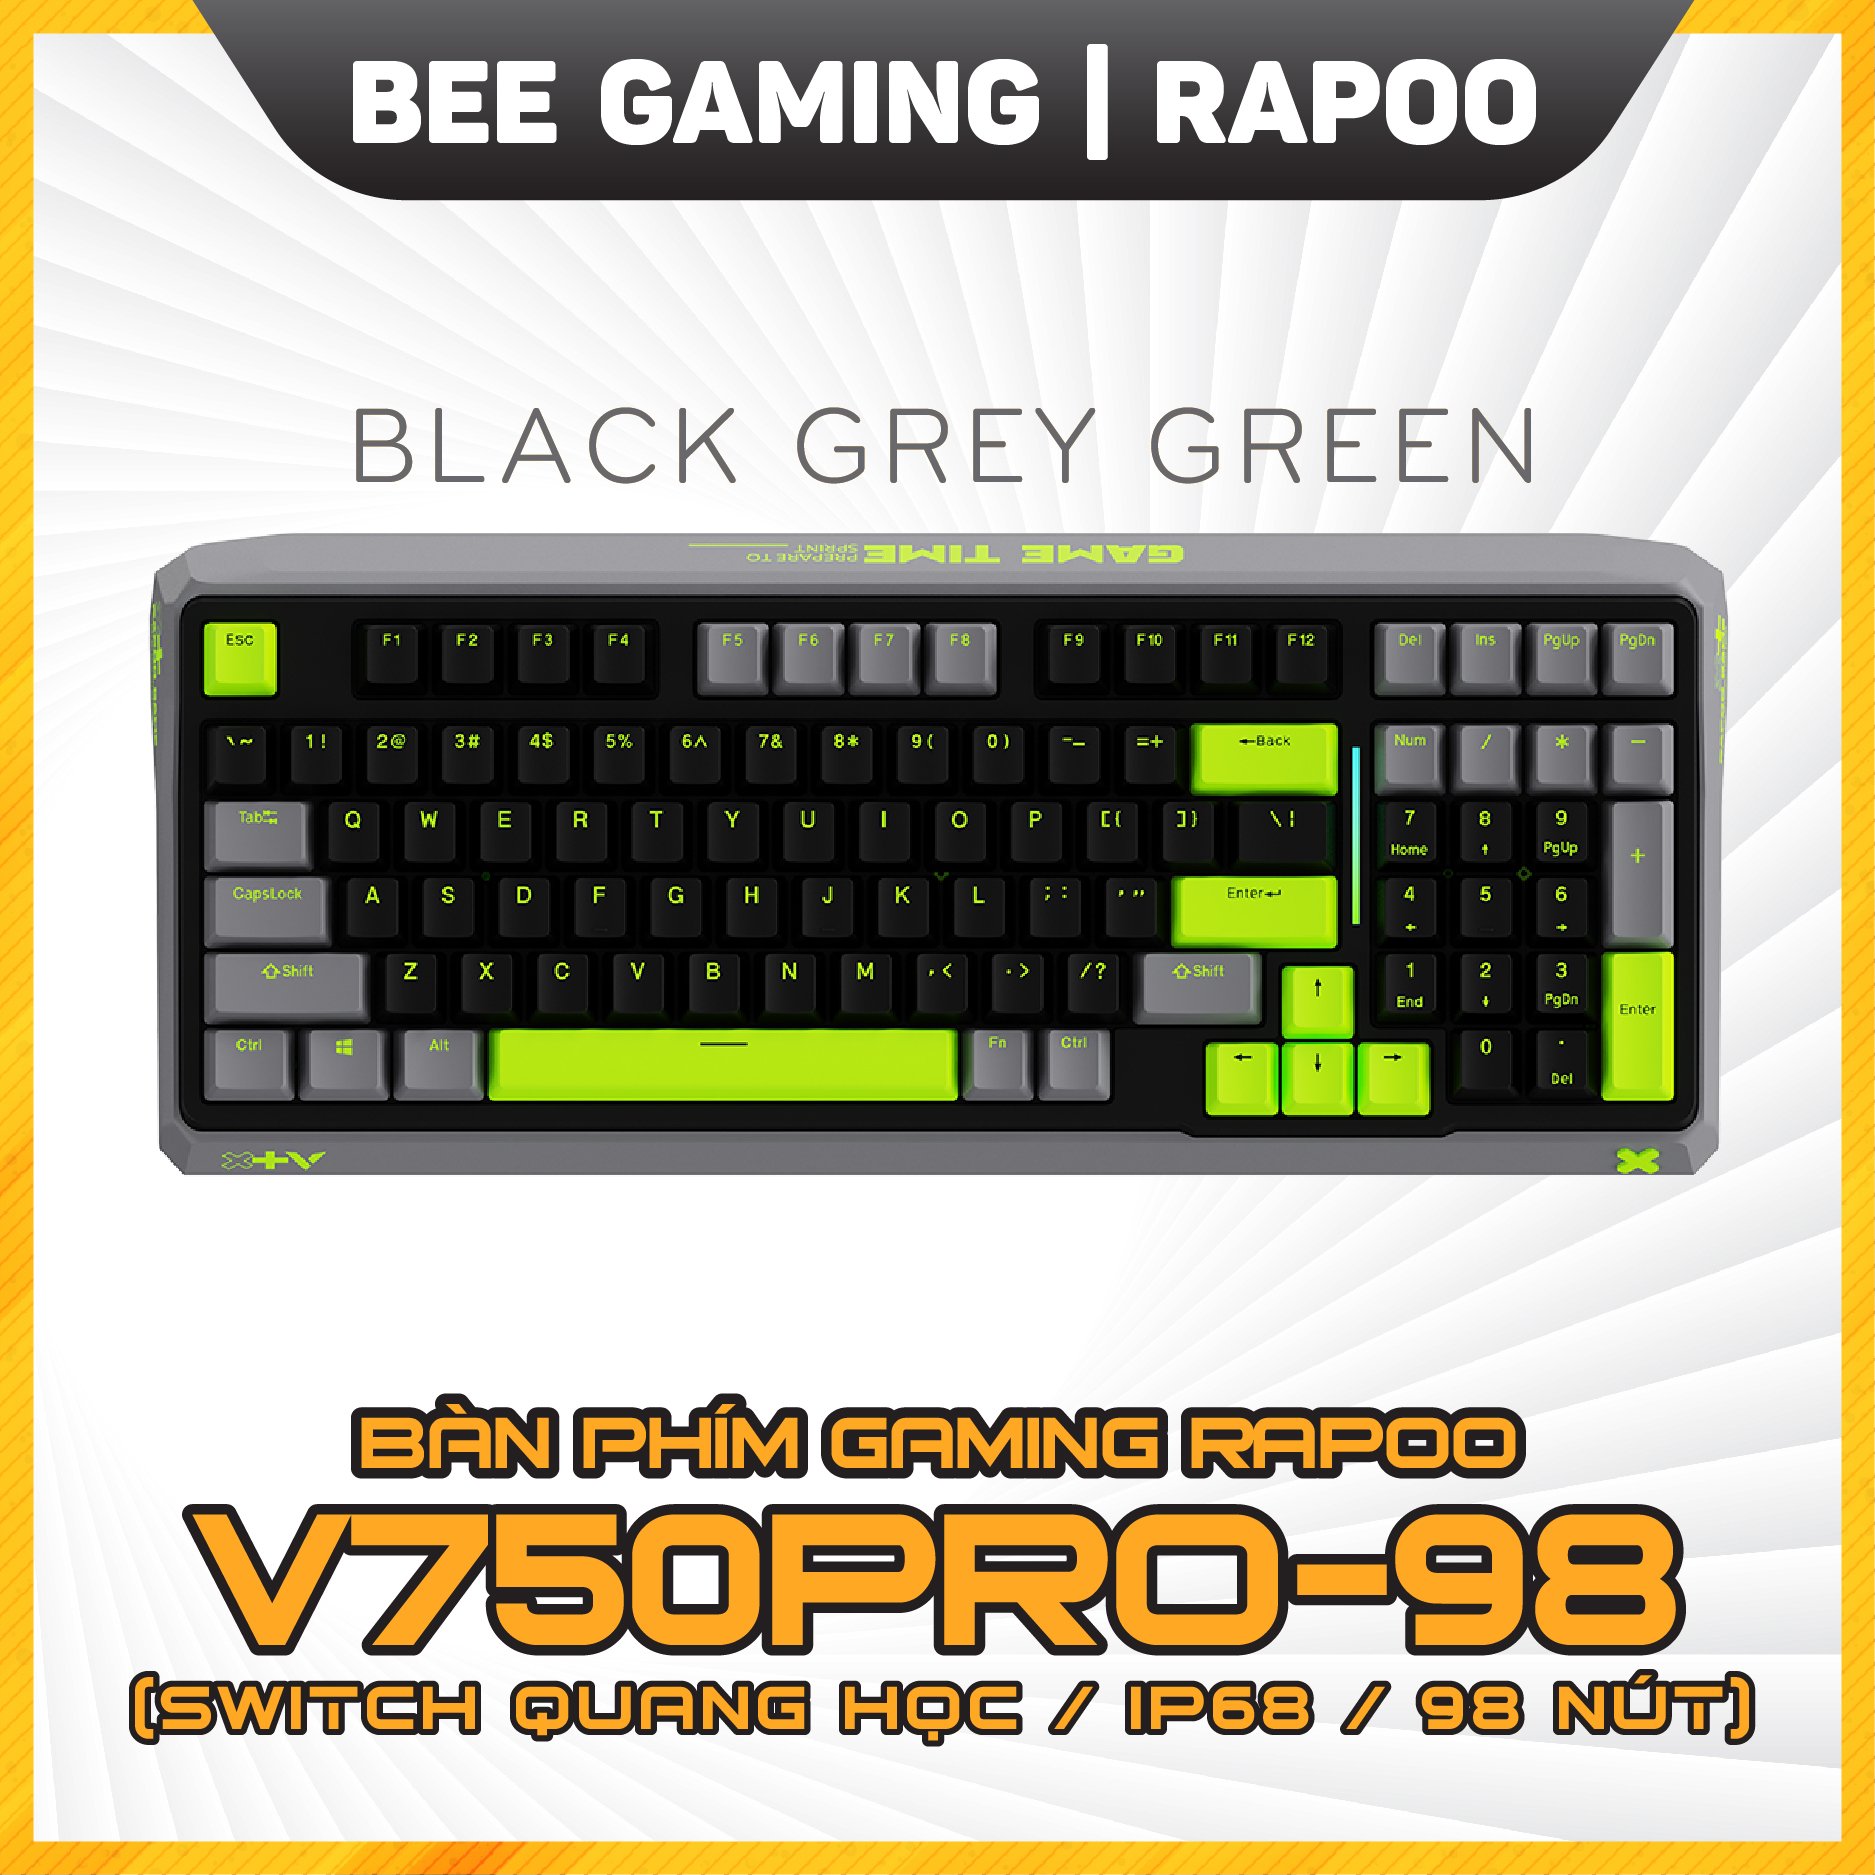 ban-phim-gaming-quang-co-rapoo-v750-pro-black-grey-green-beegaming-1